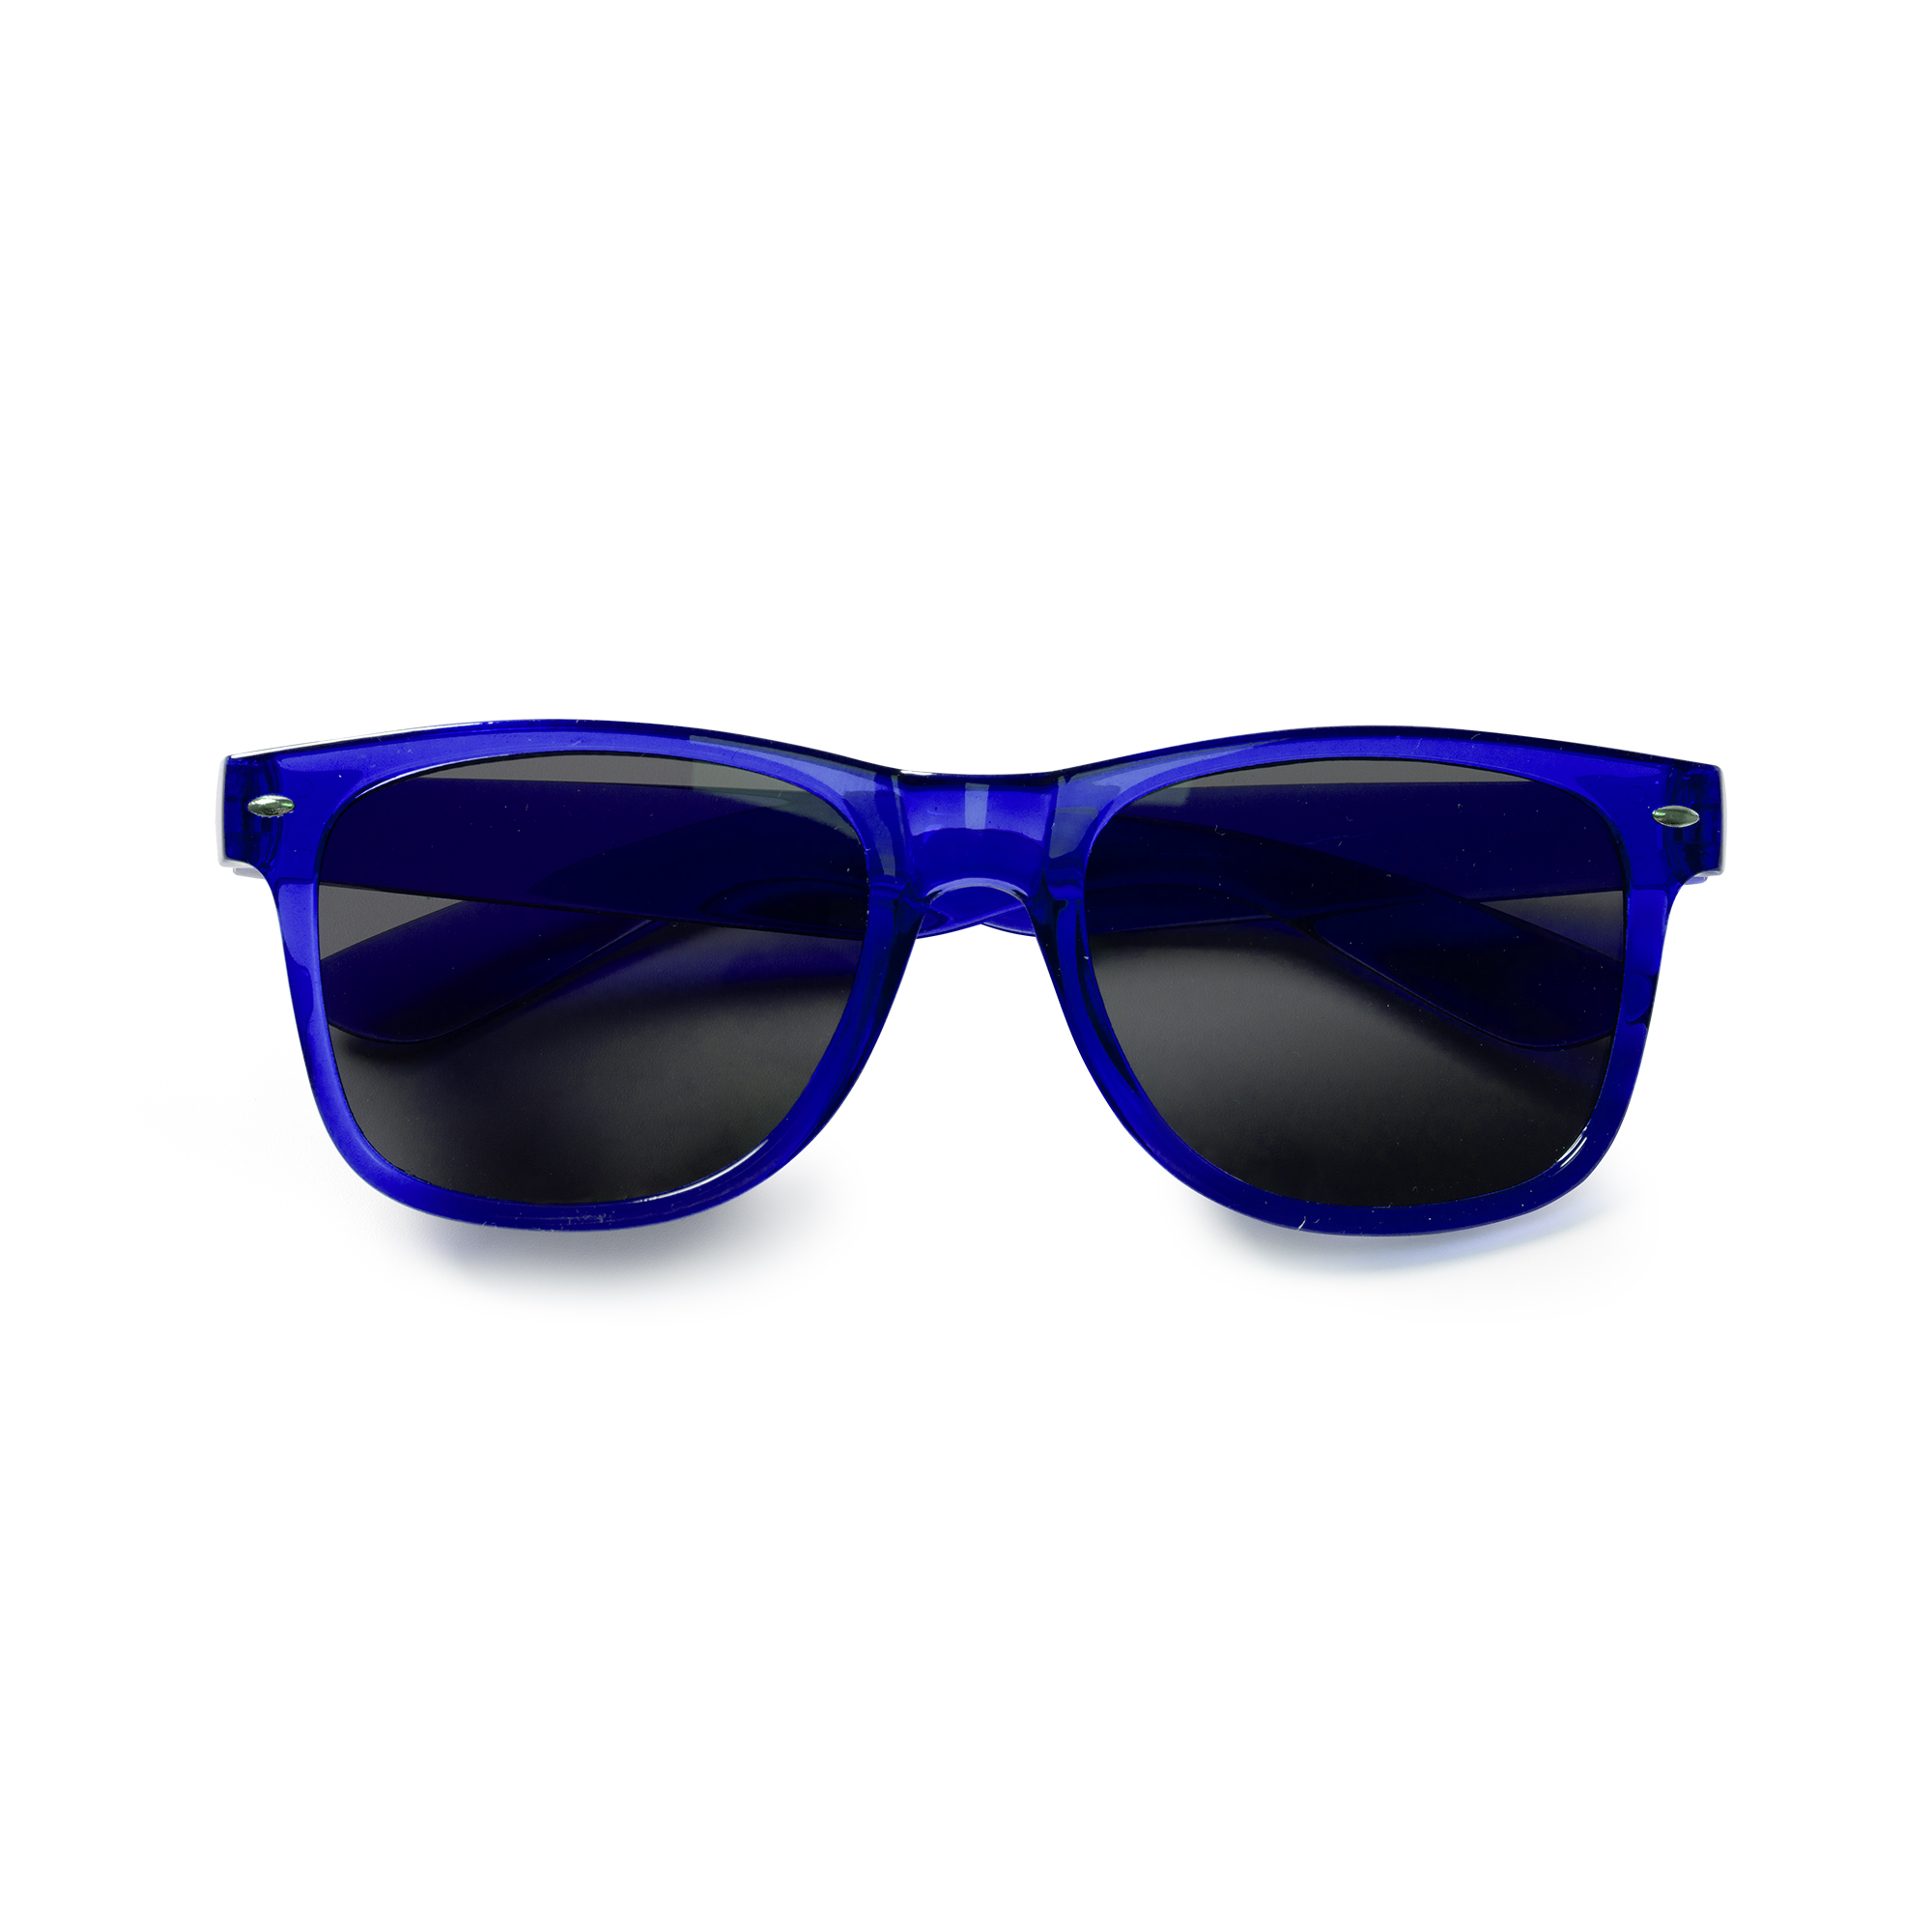 6007-pier-occhiali-da-sole-blu.jpg